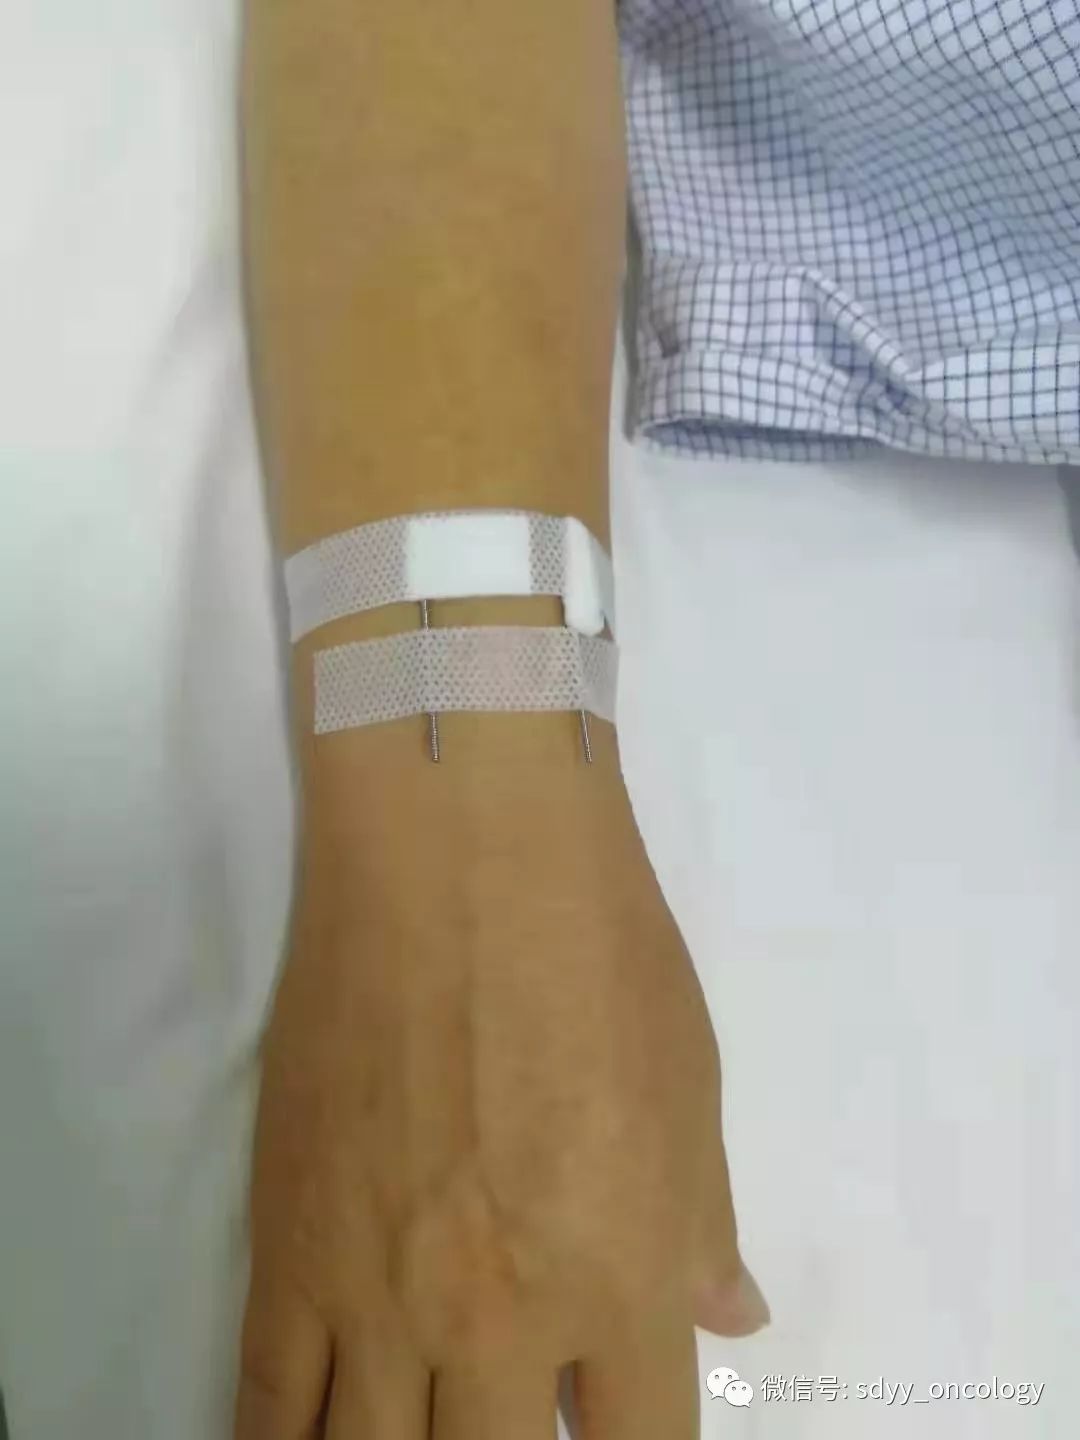 医用留置针贴-安徽省小山卫生材料有限公司